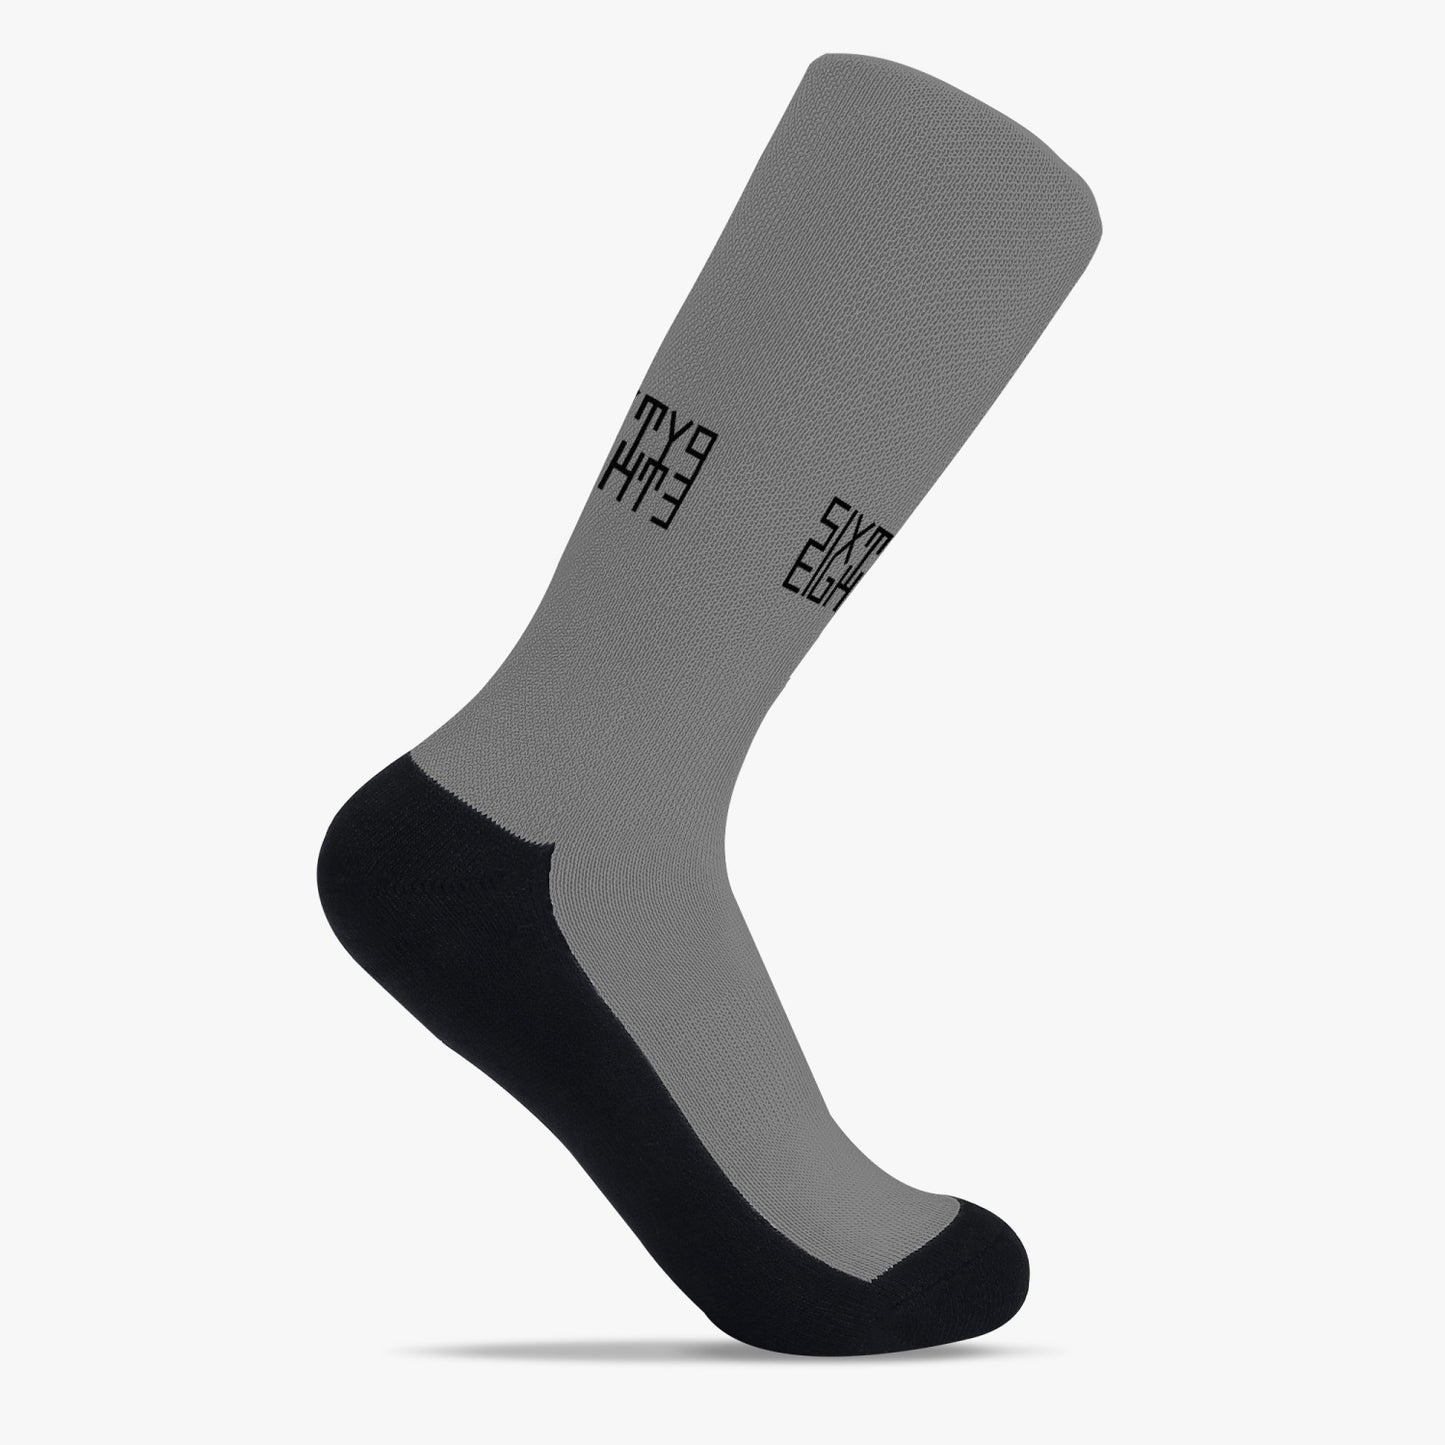 Sixty Eight 93 Logo Black Grey Reinforced Sports Socks